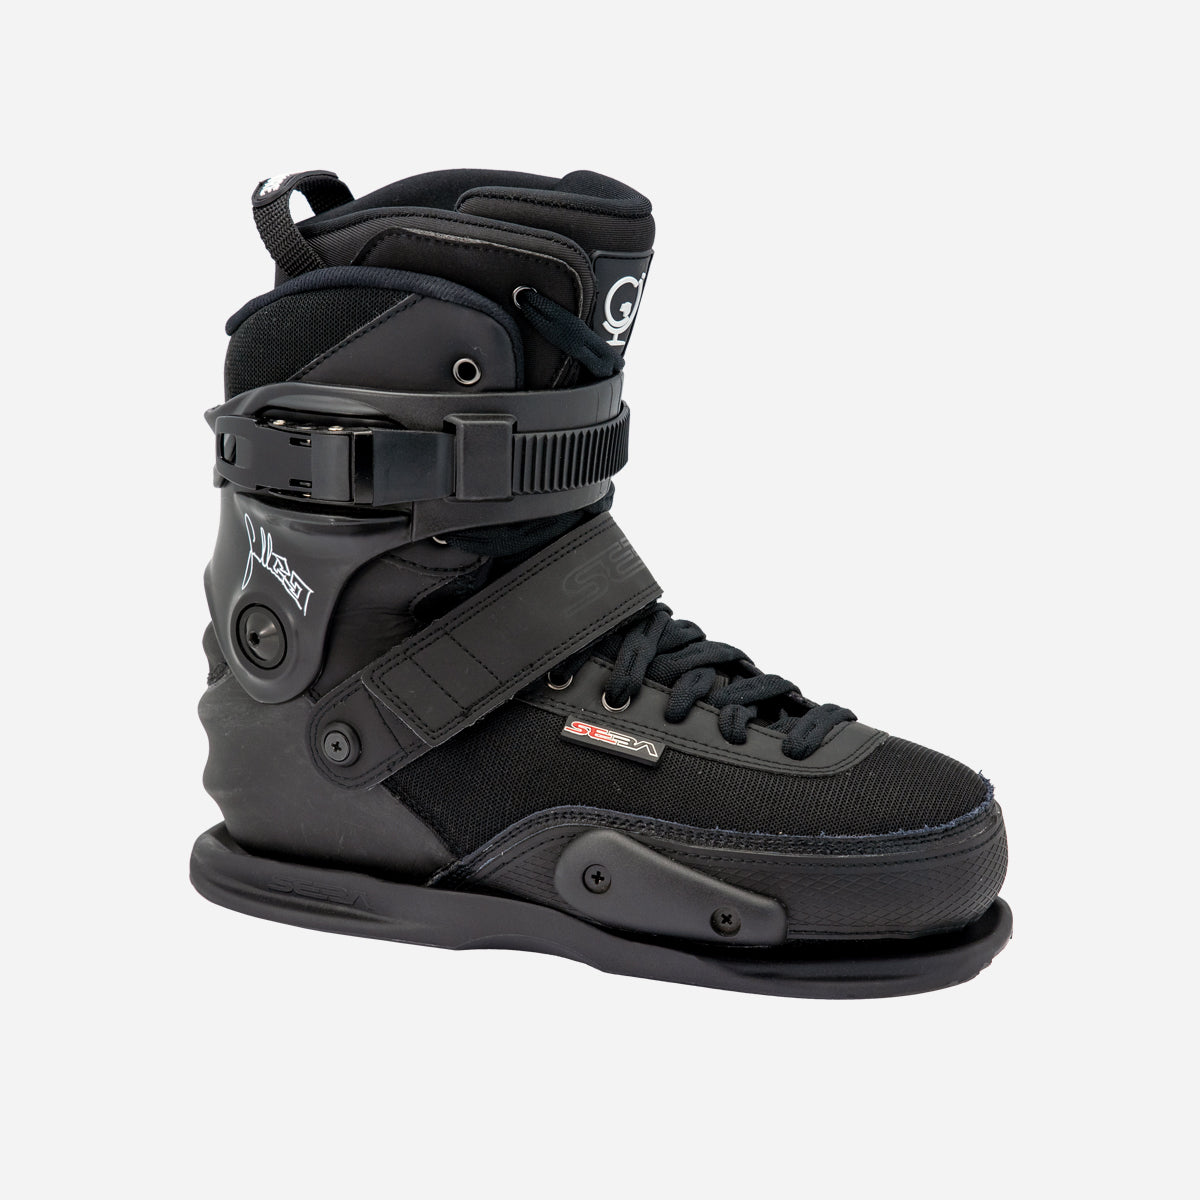 SEBA Skates - CJ2 Prime boot only